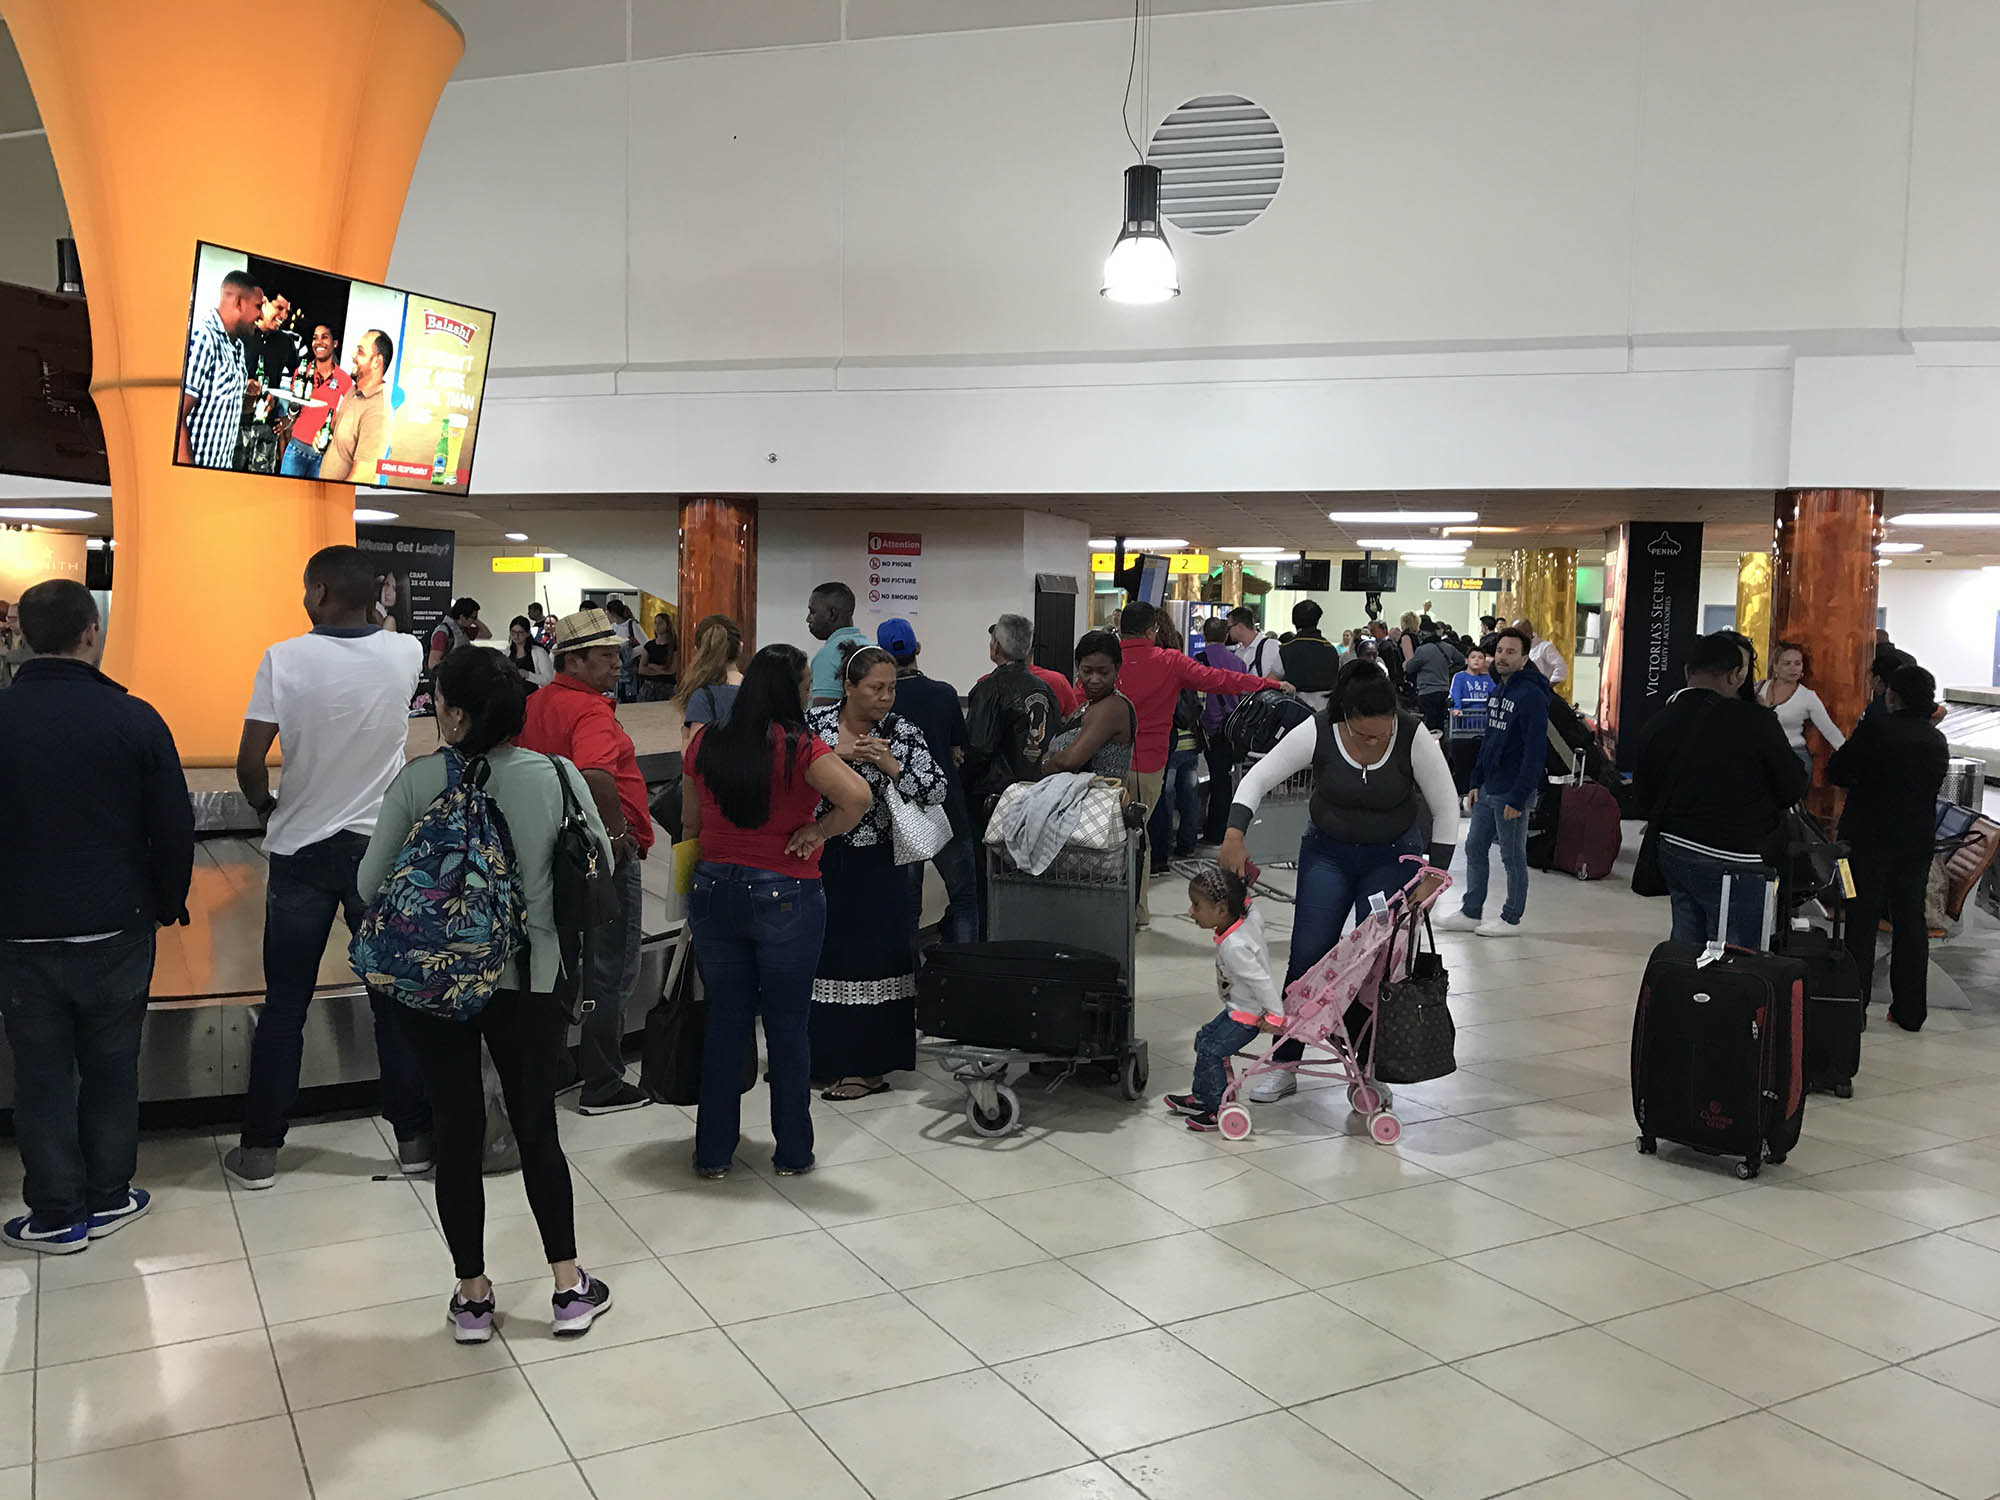 Aruba airport ziet voortdurende groei in passagiersverkeer en uitbreiding van bestemmingen